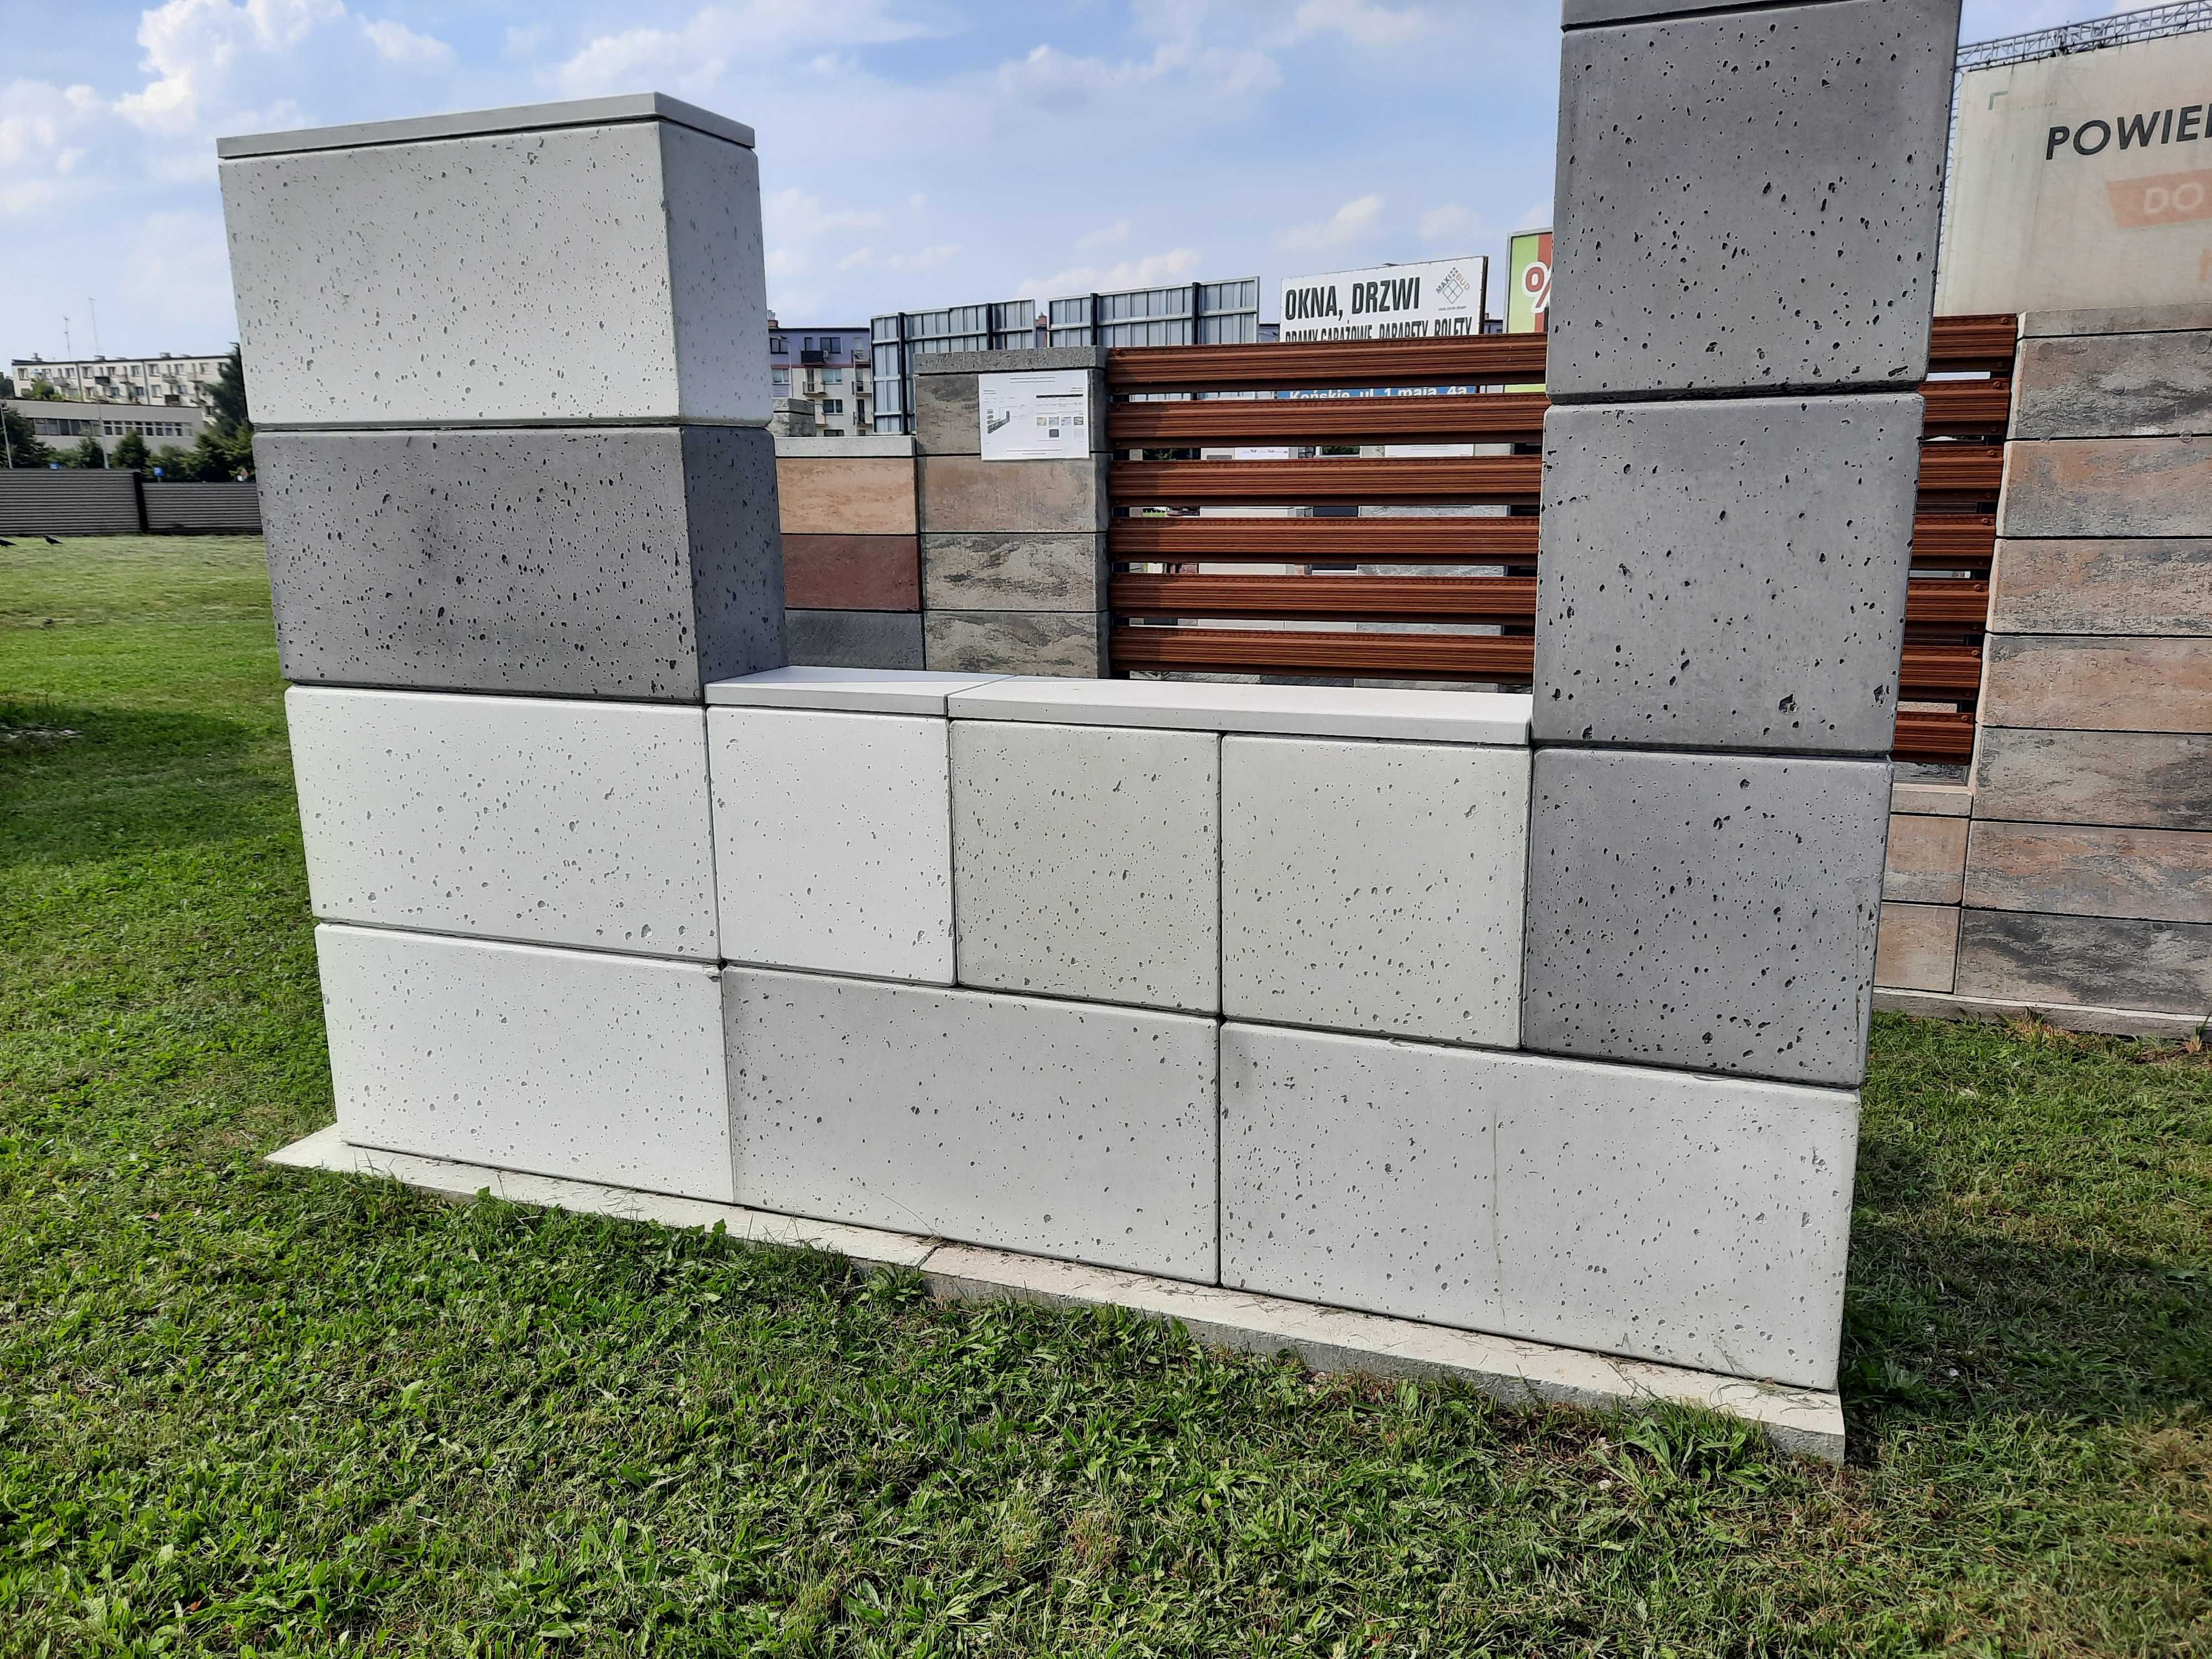 Ogrodzenie beton architektoniczny Slabb, Gaag